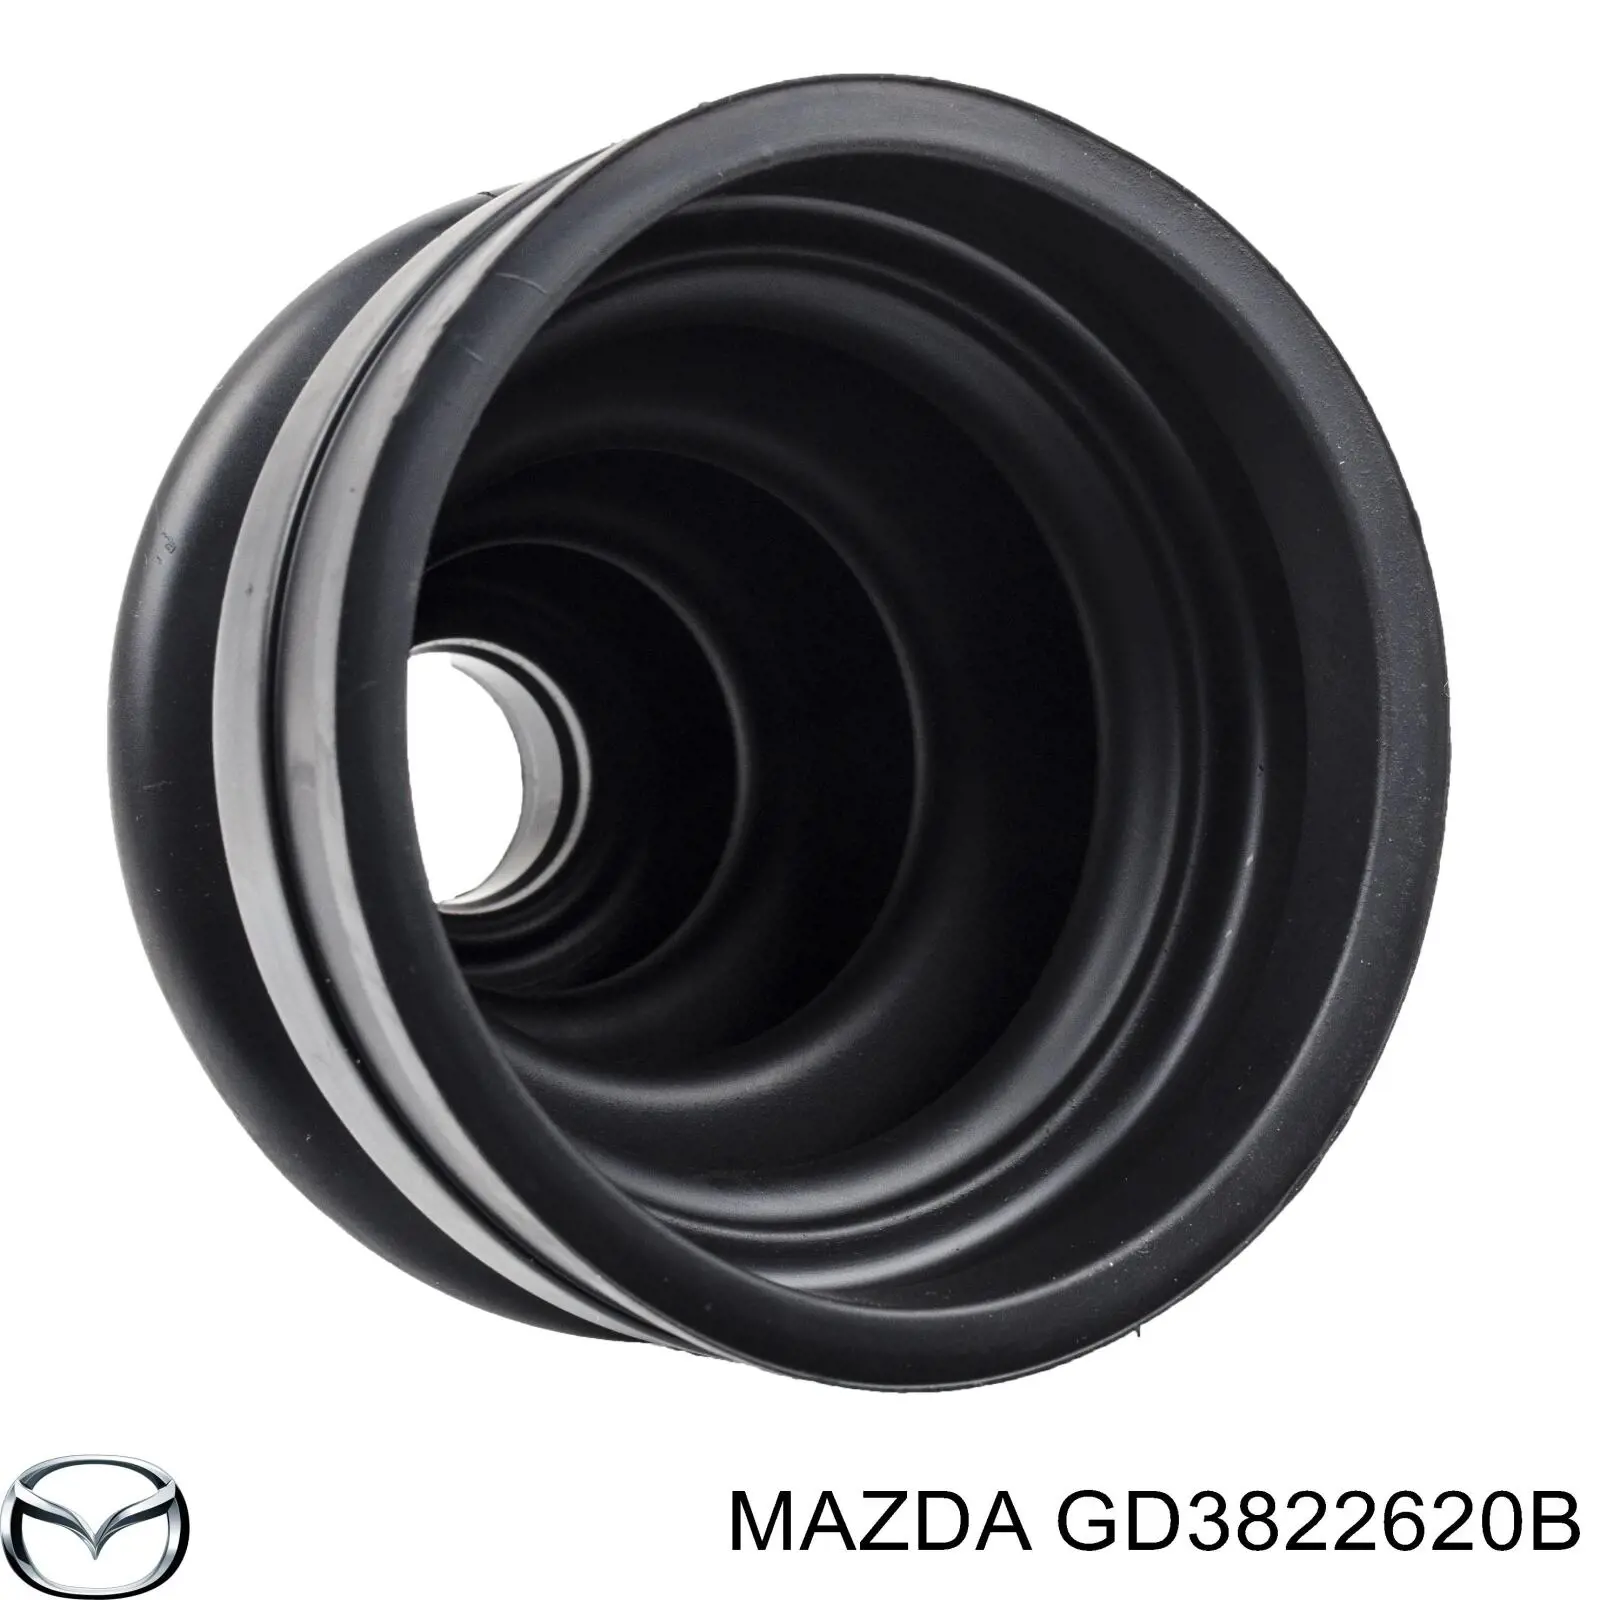 GD3822620B Mazda junta homocinética interior delantera izquierda